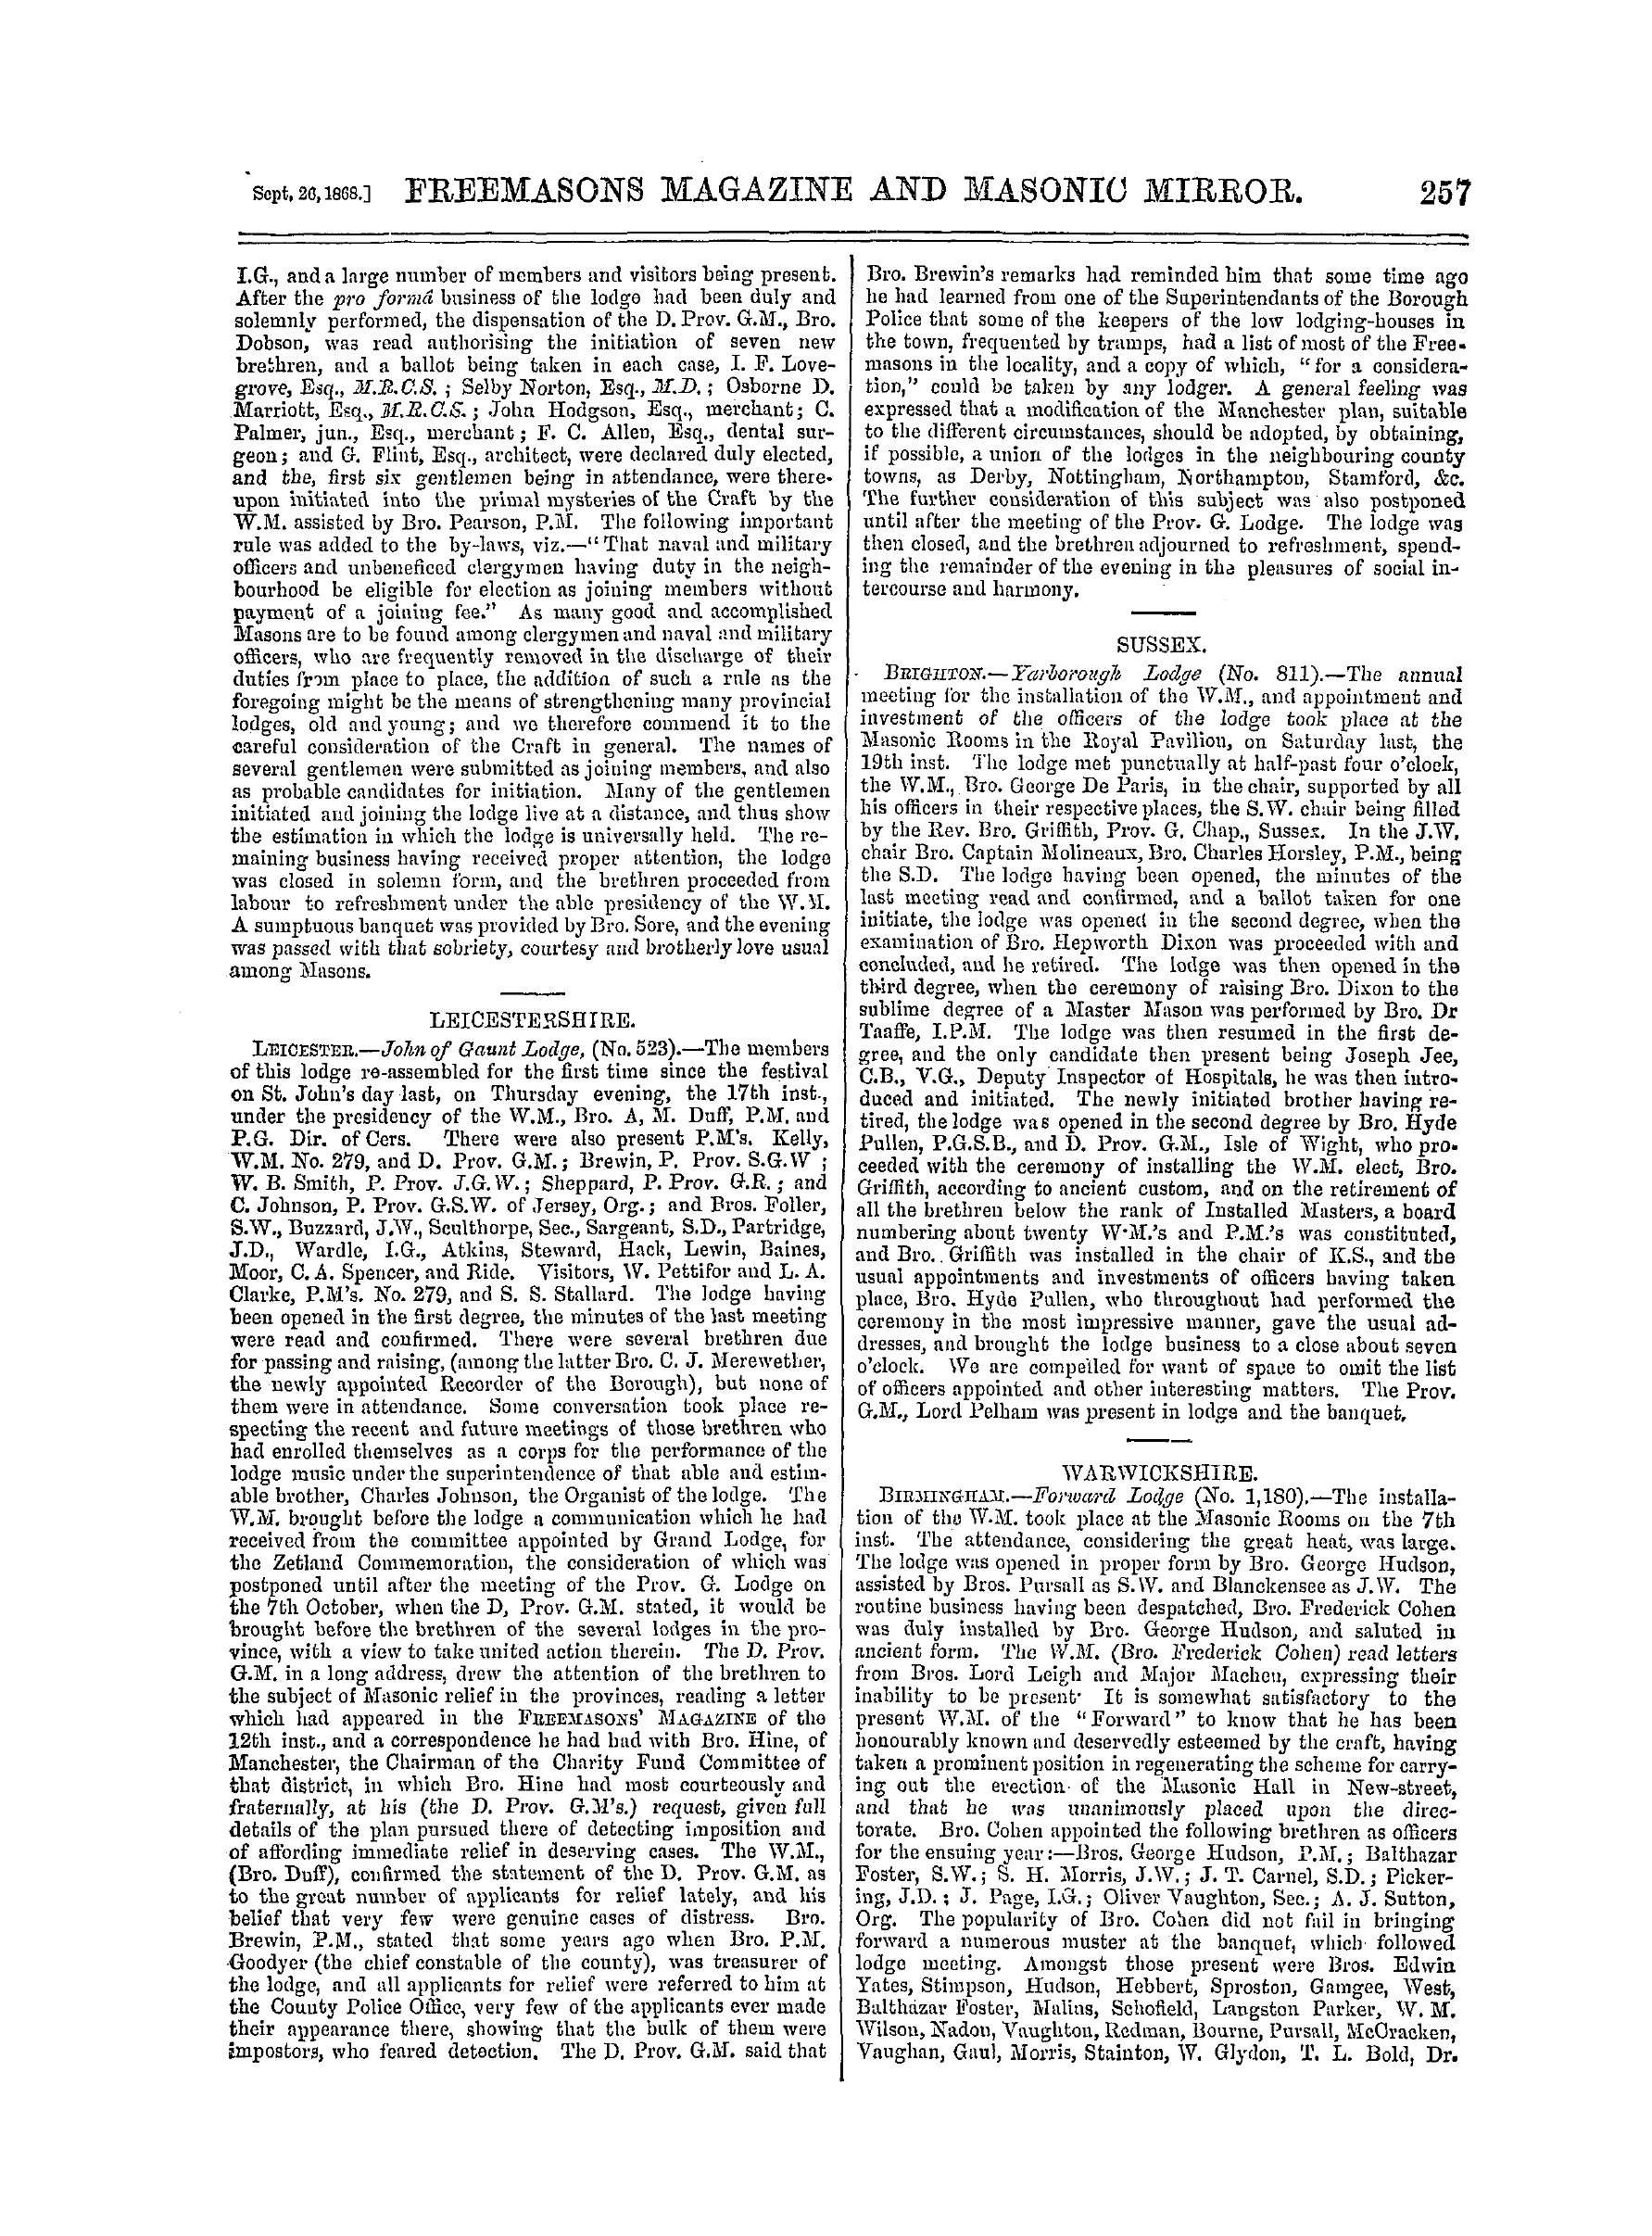 The Freemasons' Monthly Magazine: 1868-09-26: 17